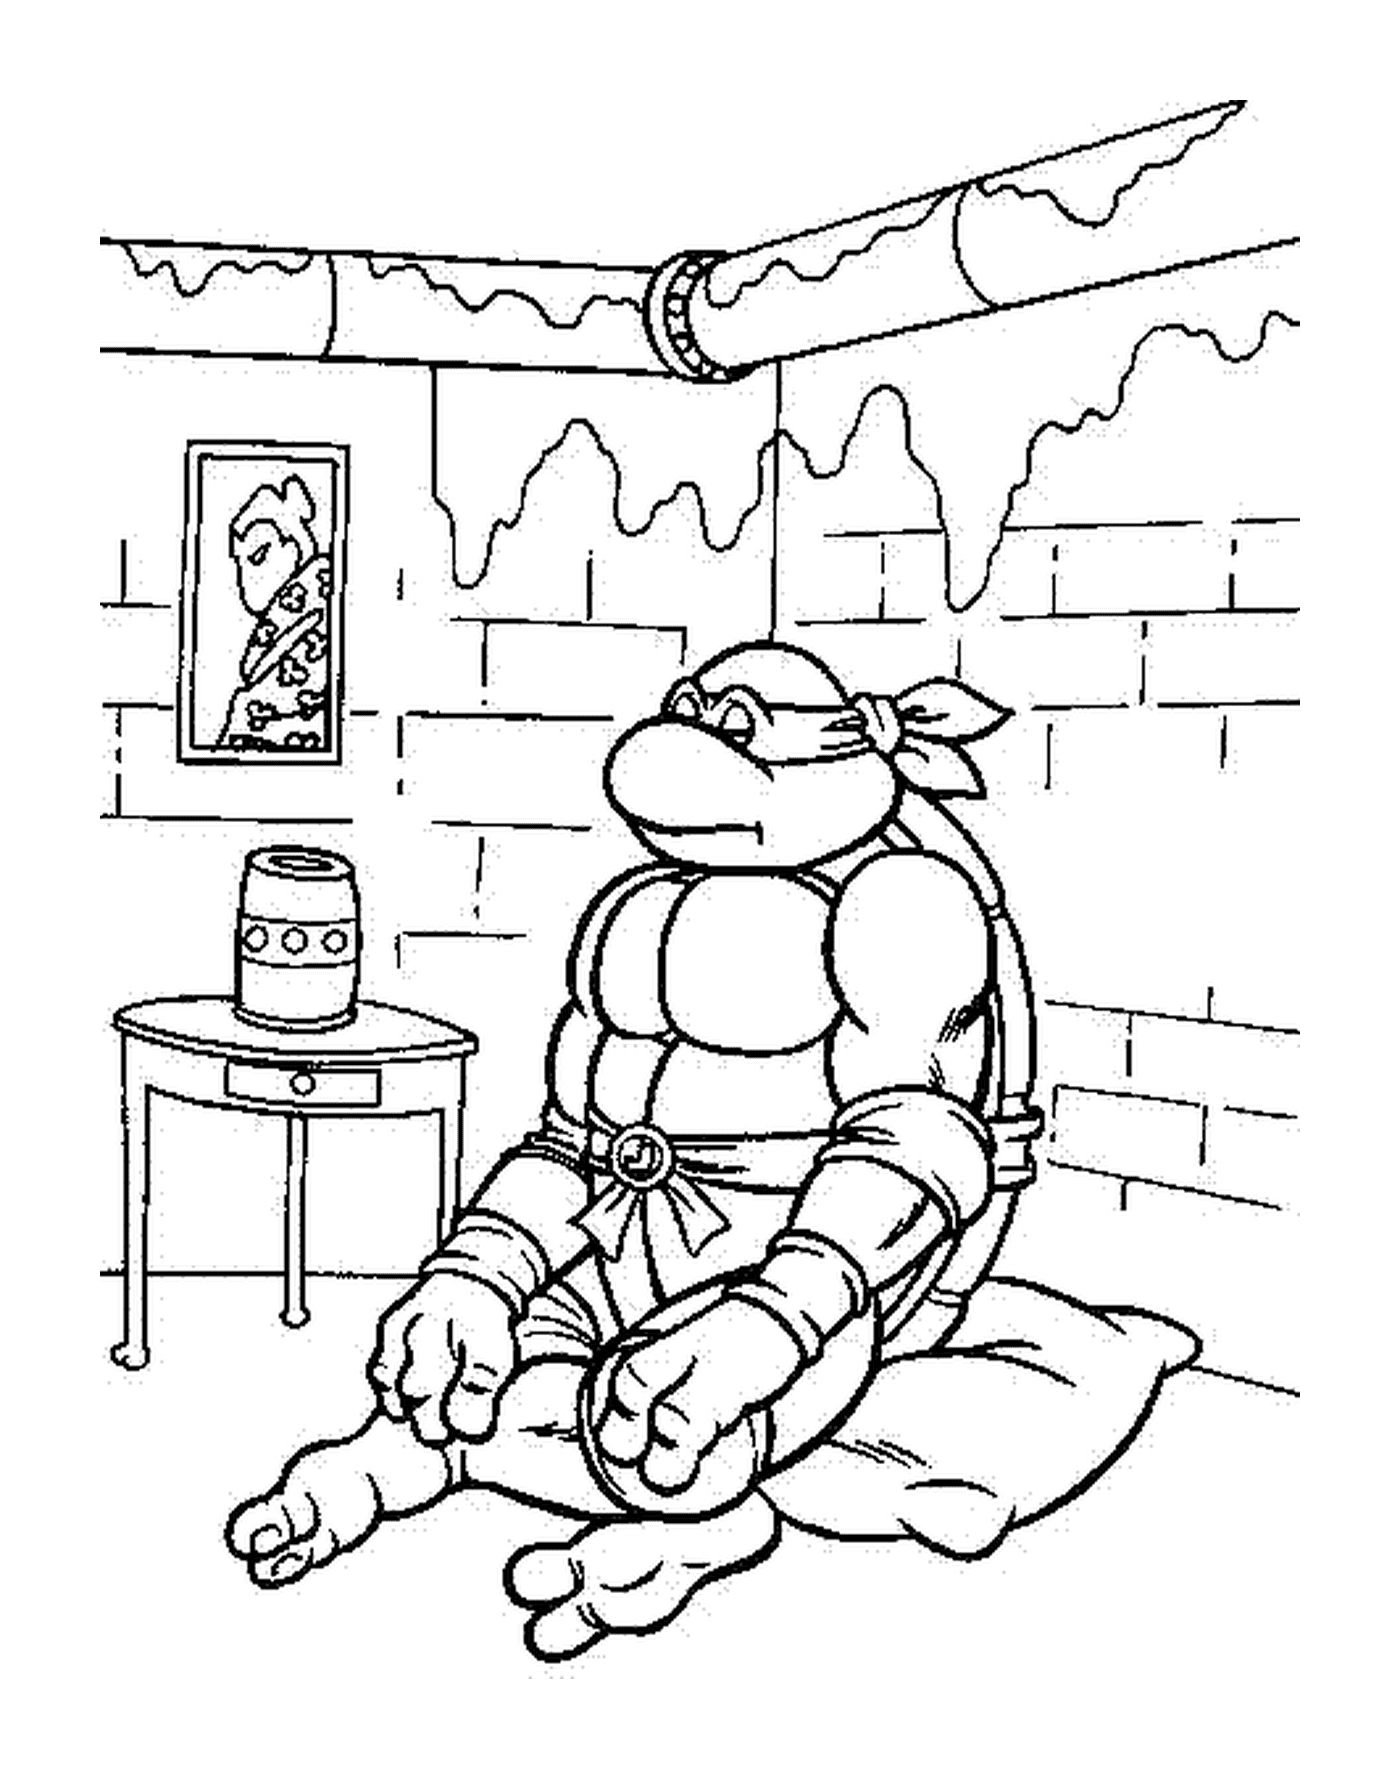  忍者海龟坐在一个房间里 